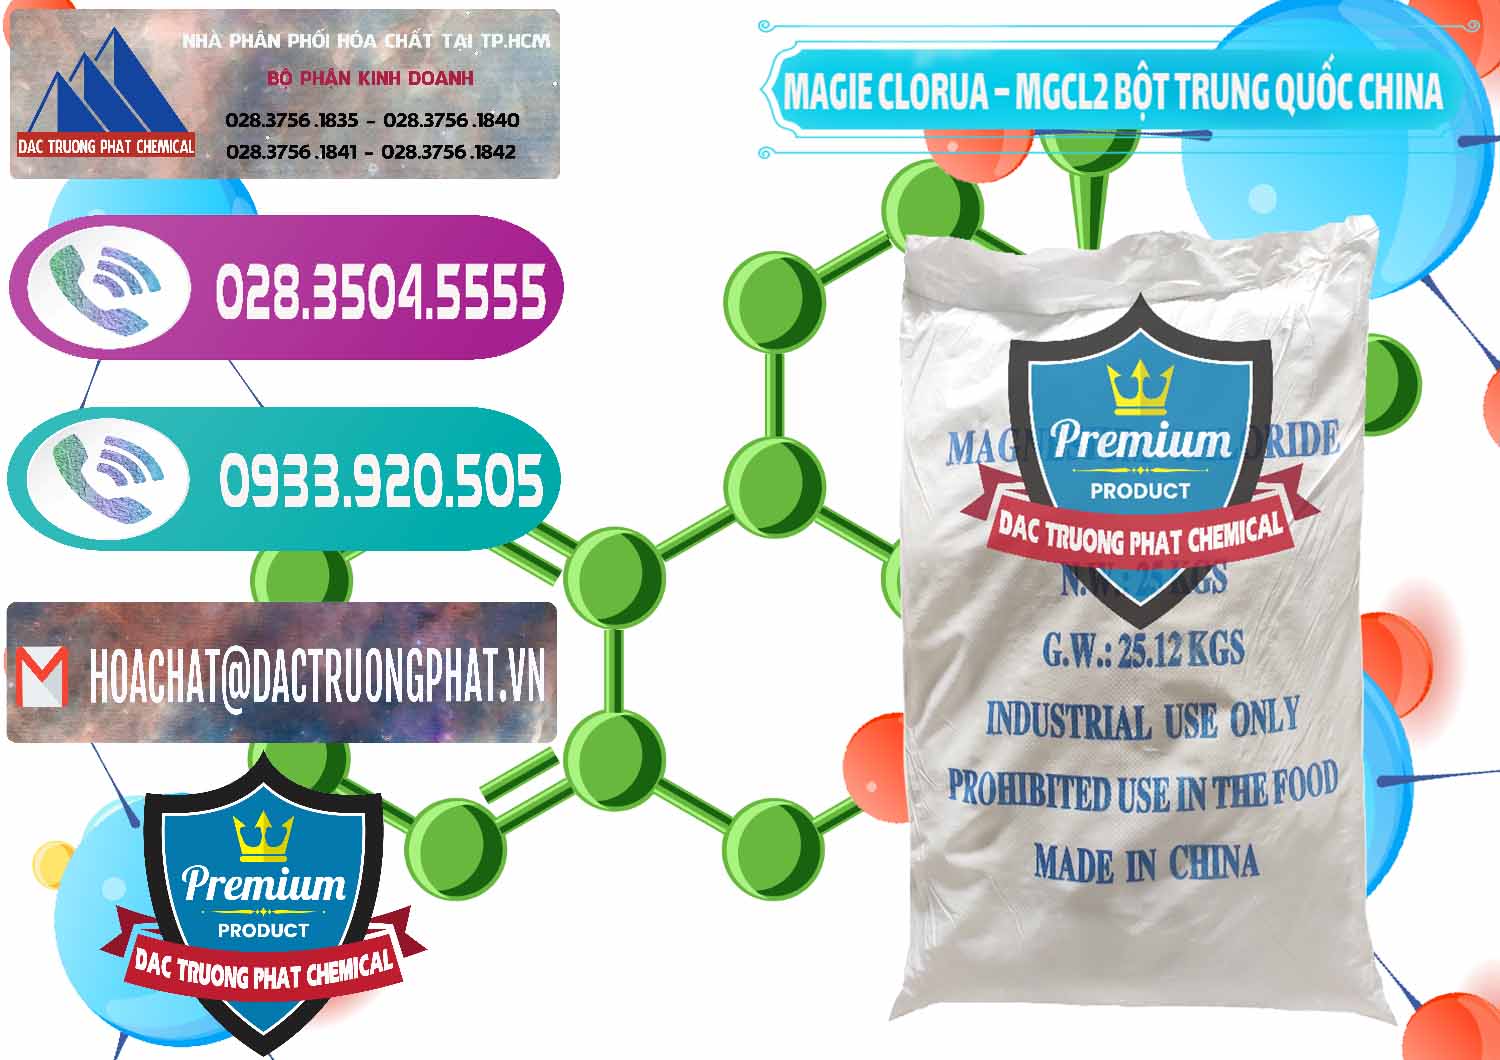 Cty kinh doanh và bán Magie Clorua – MGCL2 96% Dạng Bột Bao Chữ Xanh Trung Quốc China - 0207 - Chuyên cung cấp ( bán ) hóa chất tại TP.HCM - hoachatxulynuoc.com